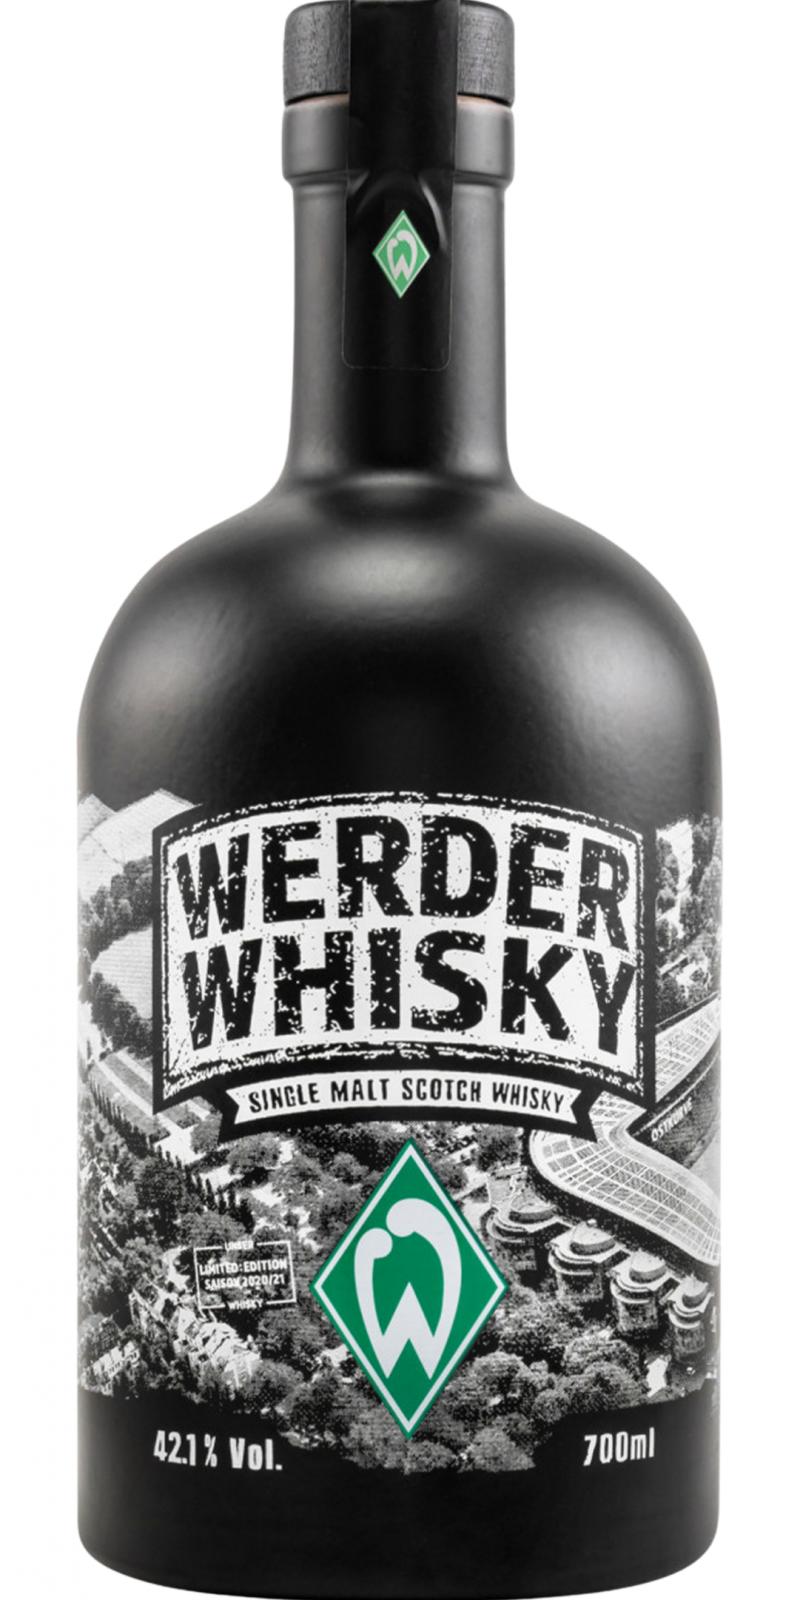 Werder Whisky Saison 2020/21 KI